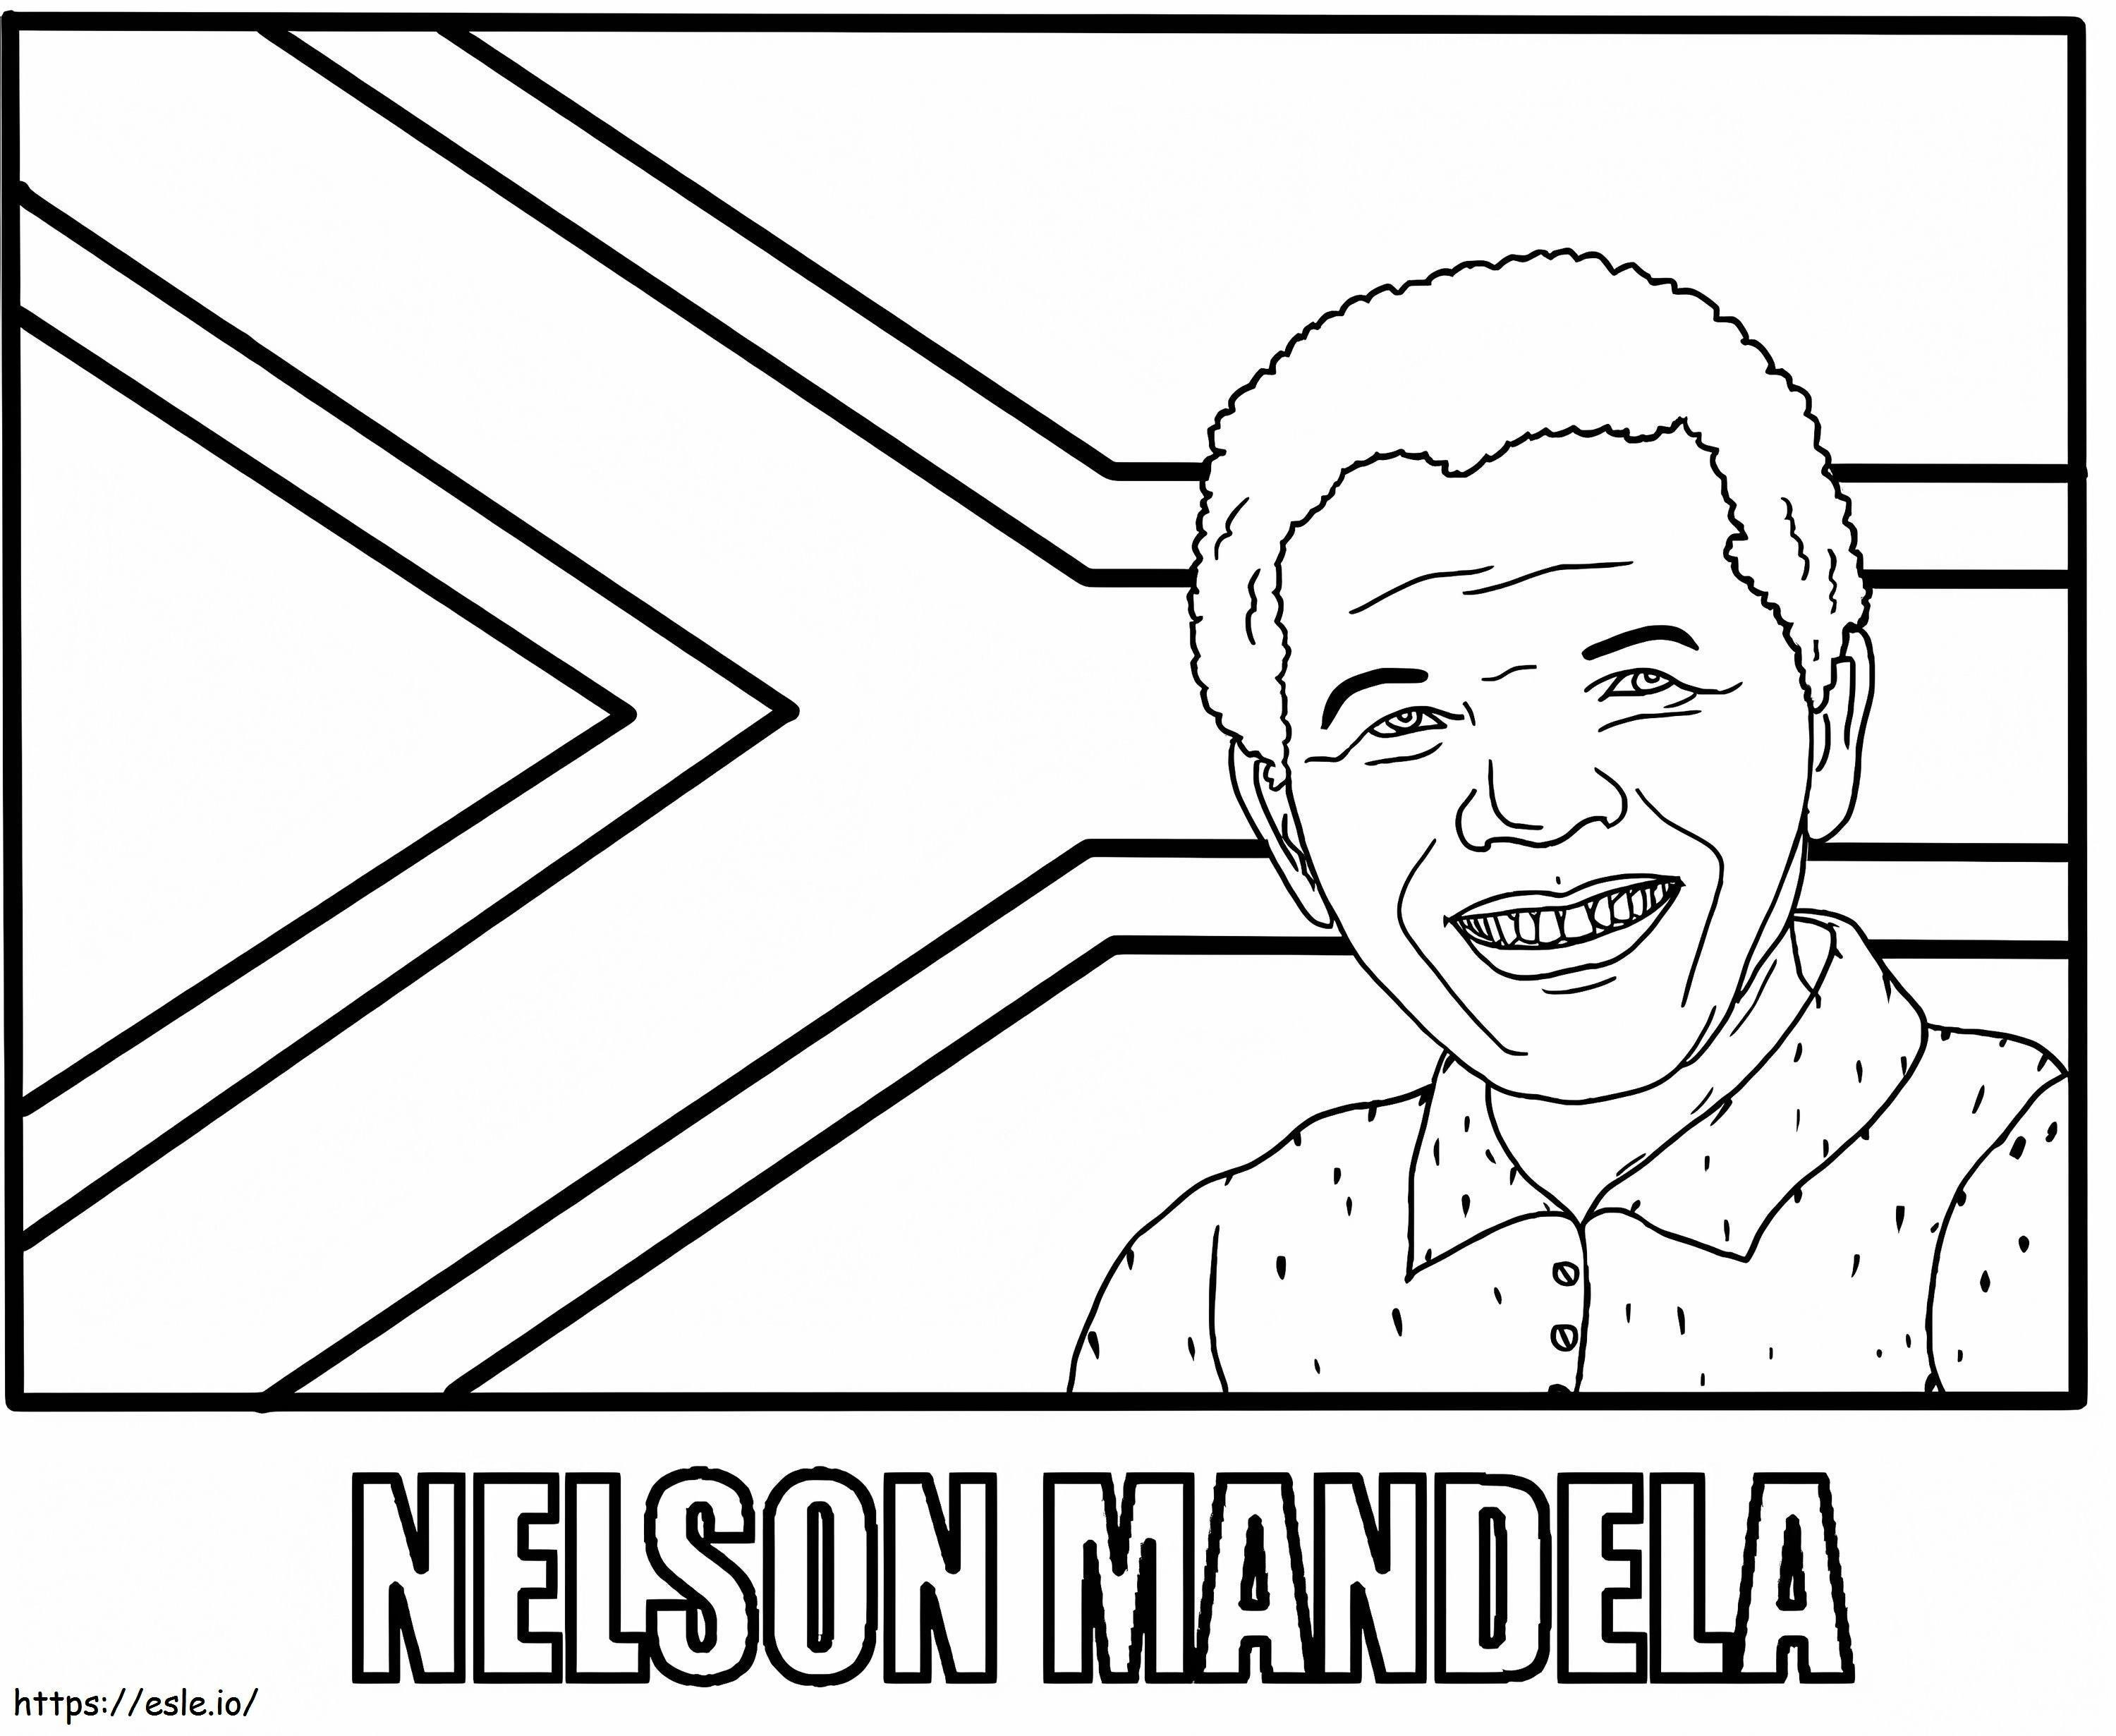 Coloriage Nelson Mandela6 à imprimer dessin